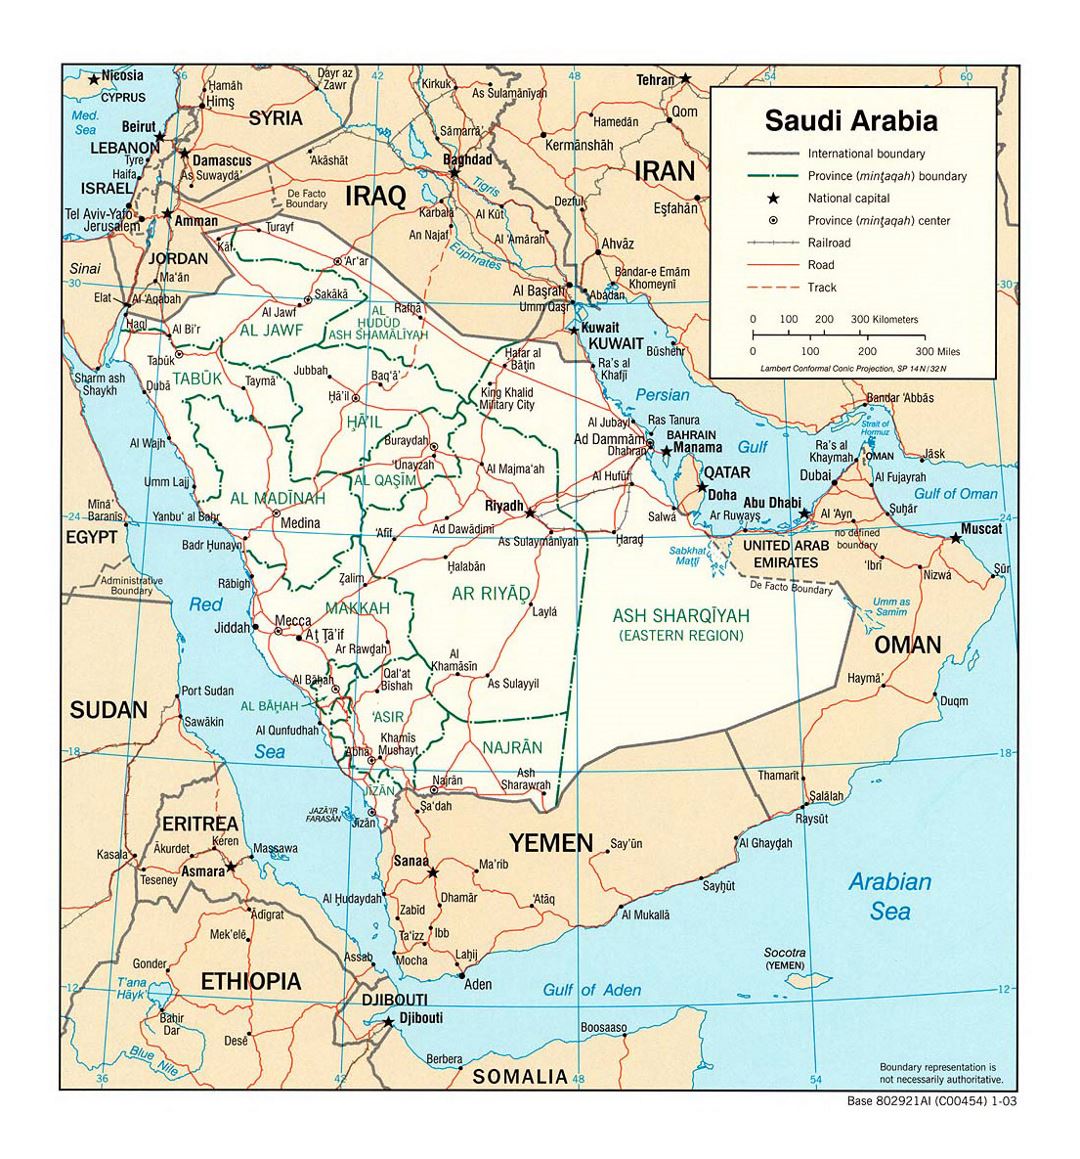 Detallado mapa político y administrativo de Arabia Saudita con carreteras, ferrocarriles y principales ciudades - 2003